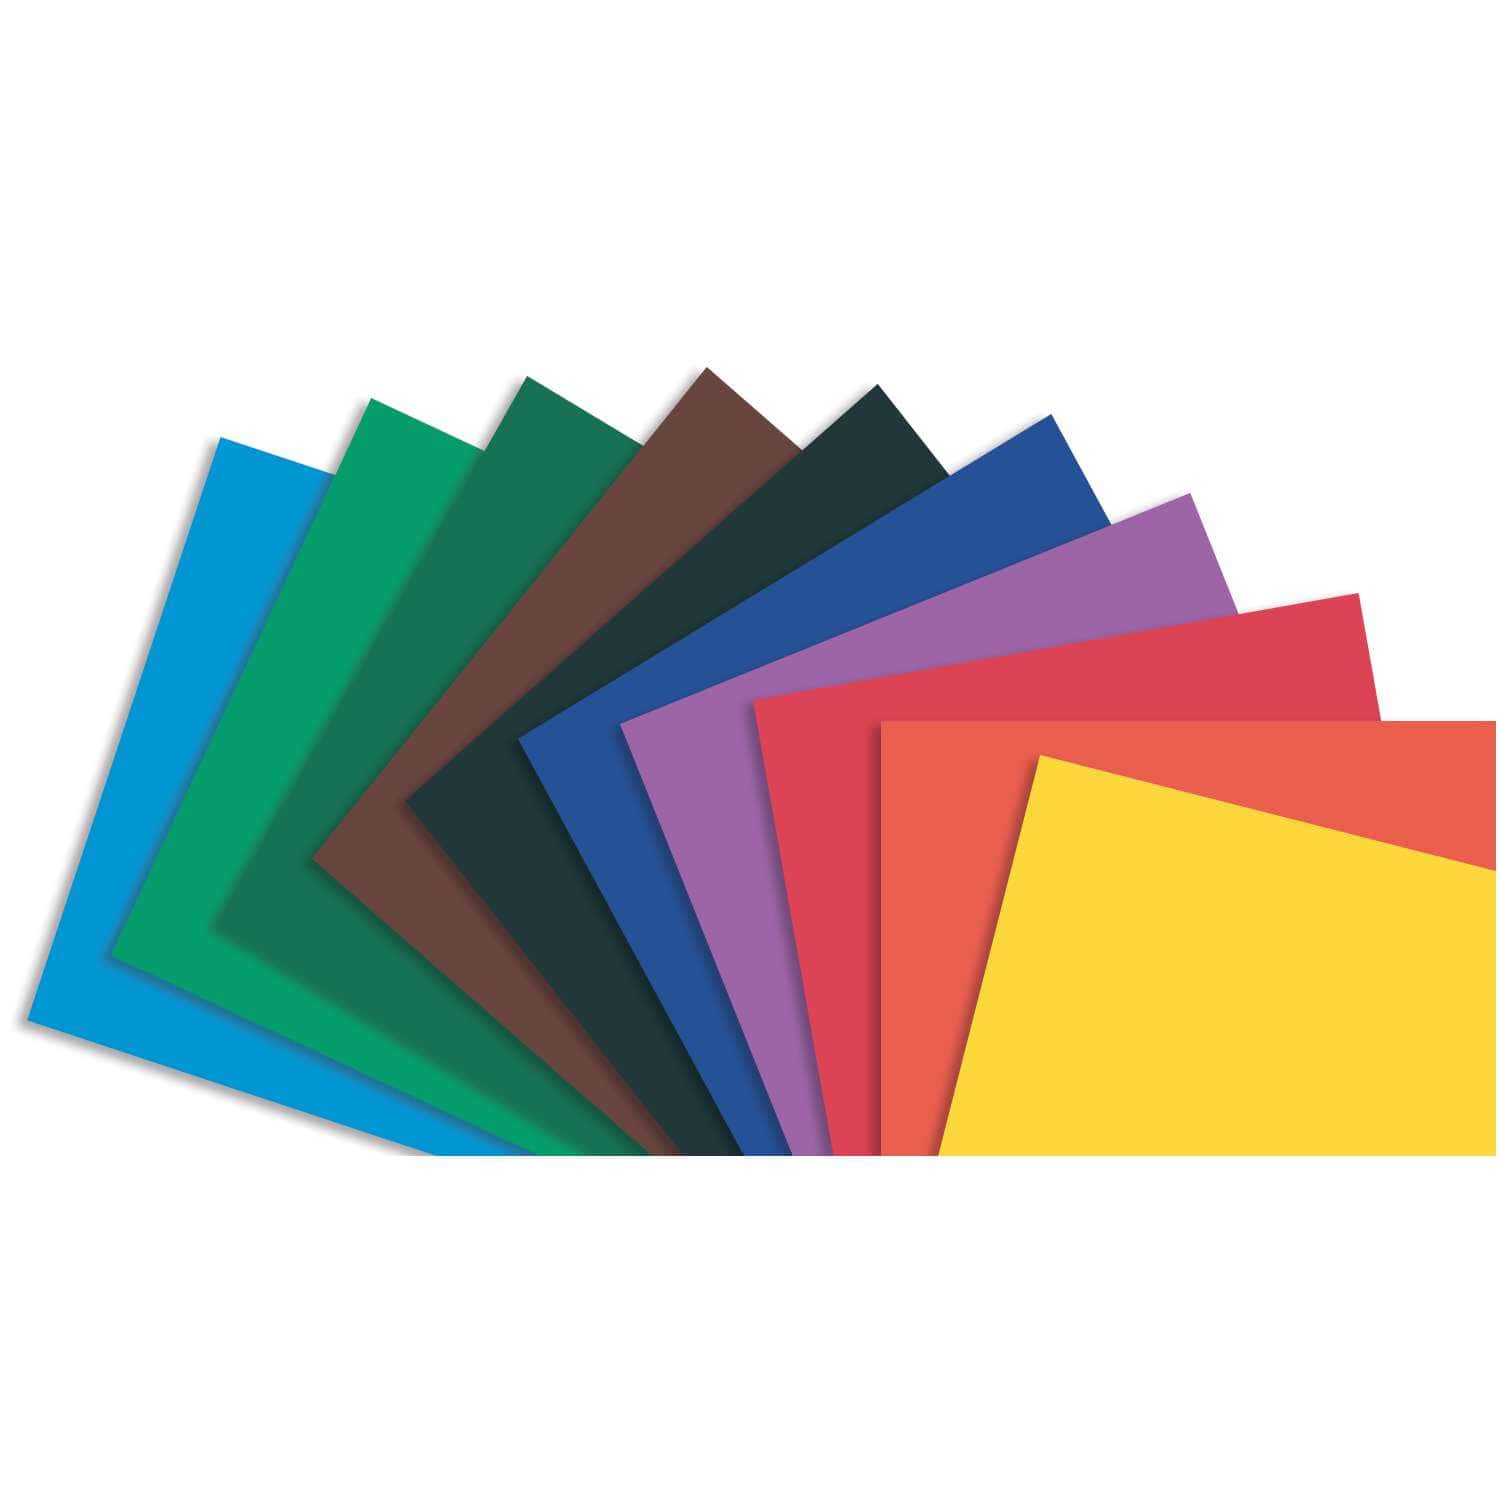 Met opzet Fonetiek Philadelphia Folia gekleurd papier assortiment, 220g | Gerstaecker - De grootste online  winkel voor kunstenaarsbenodigdheden!